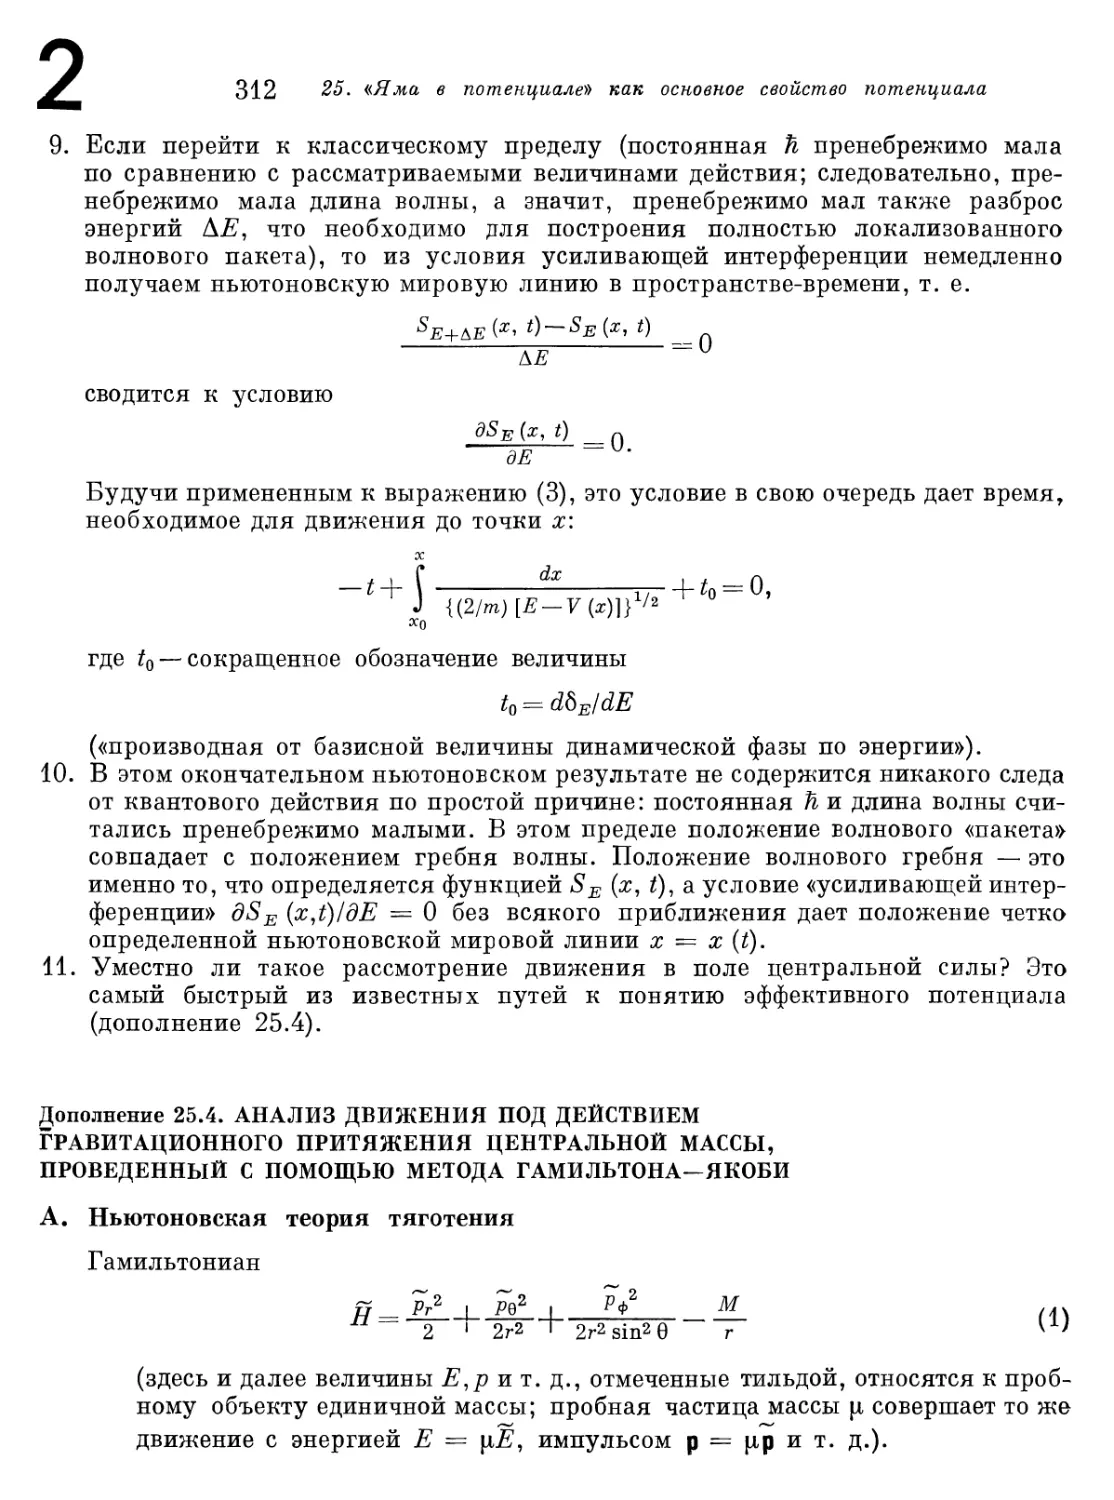 Дополнение 25.4. Анализ движения под действием гравитационного притяжения центральной массы, проведенный с помощью метода Гамильтона- Якоби